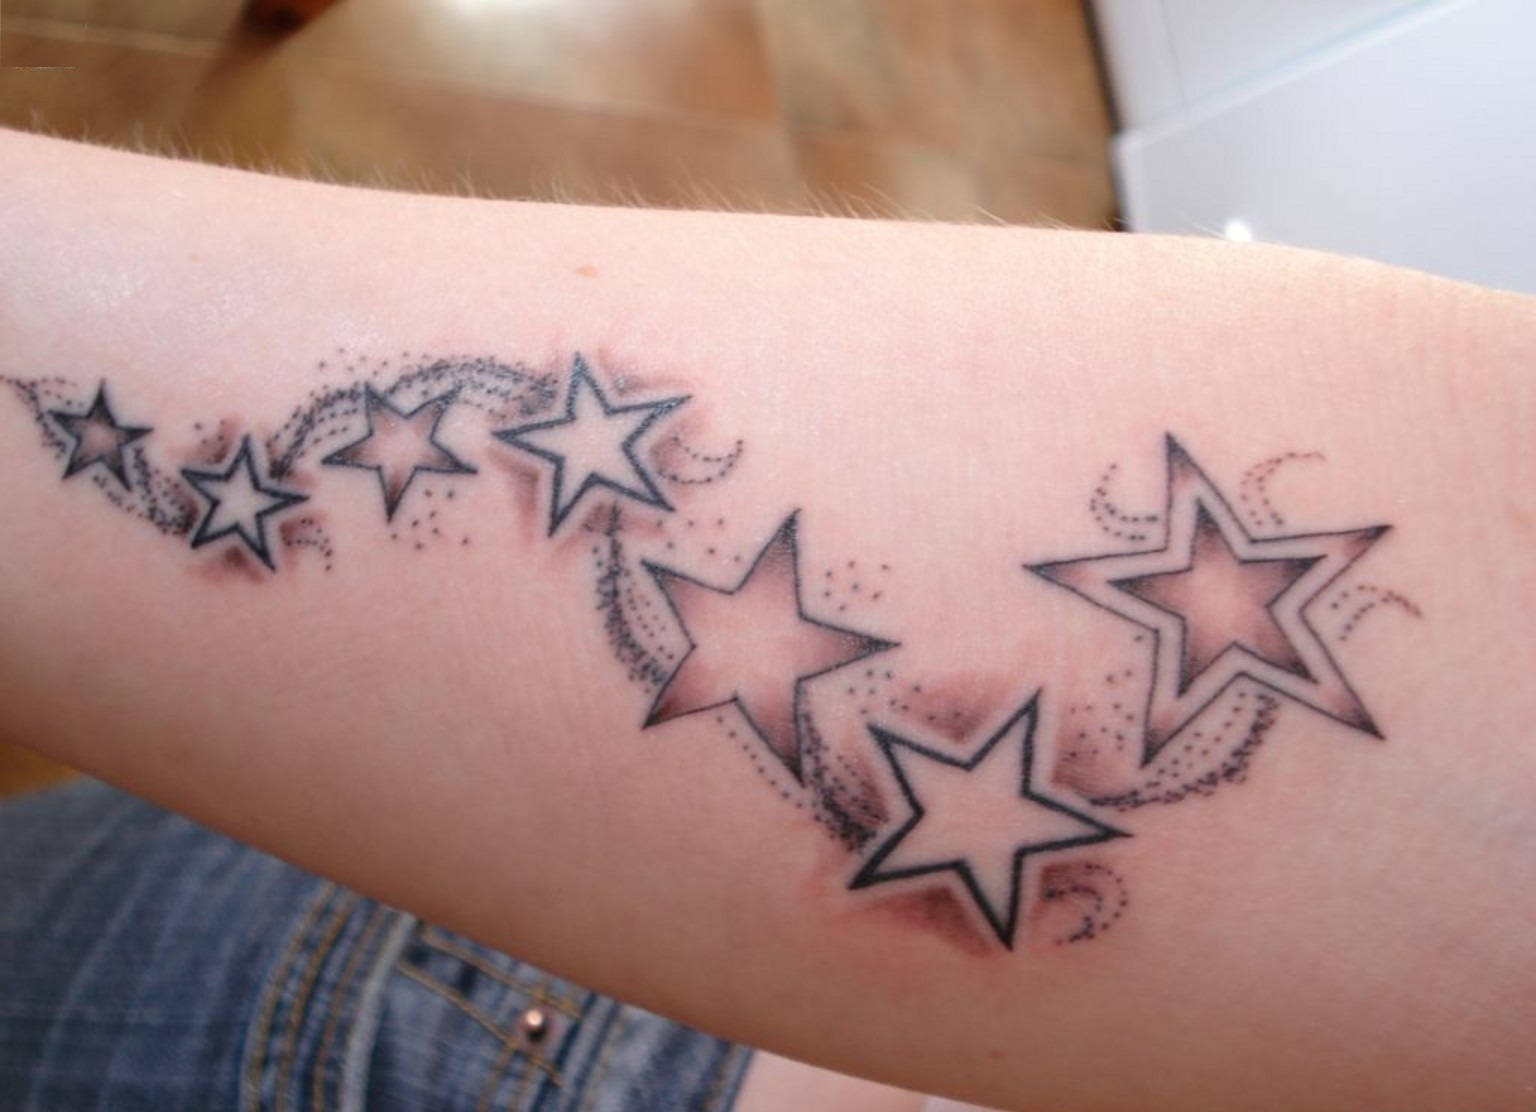 Sea Star Tattoo Designs - wide 9